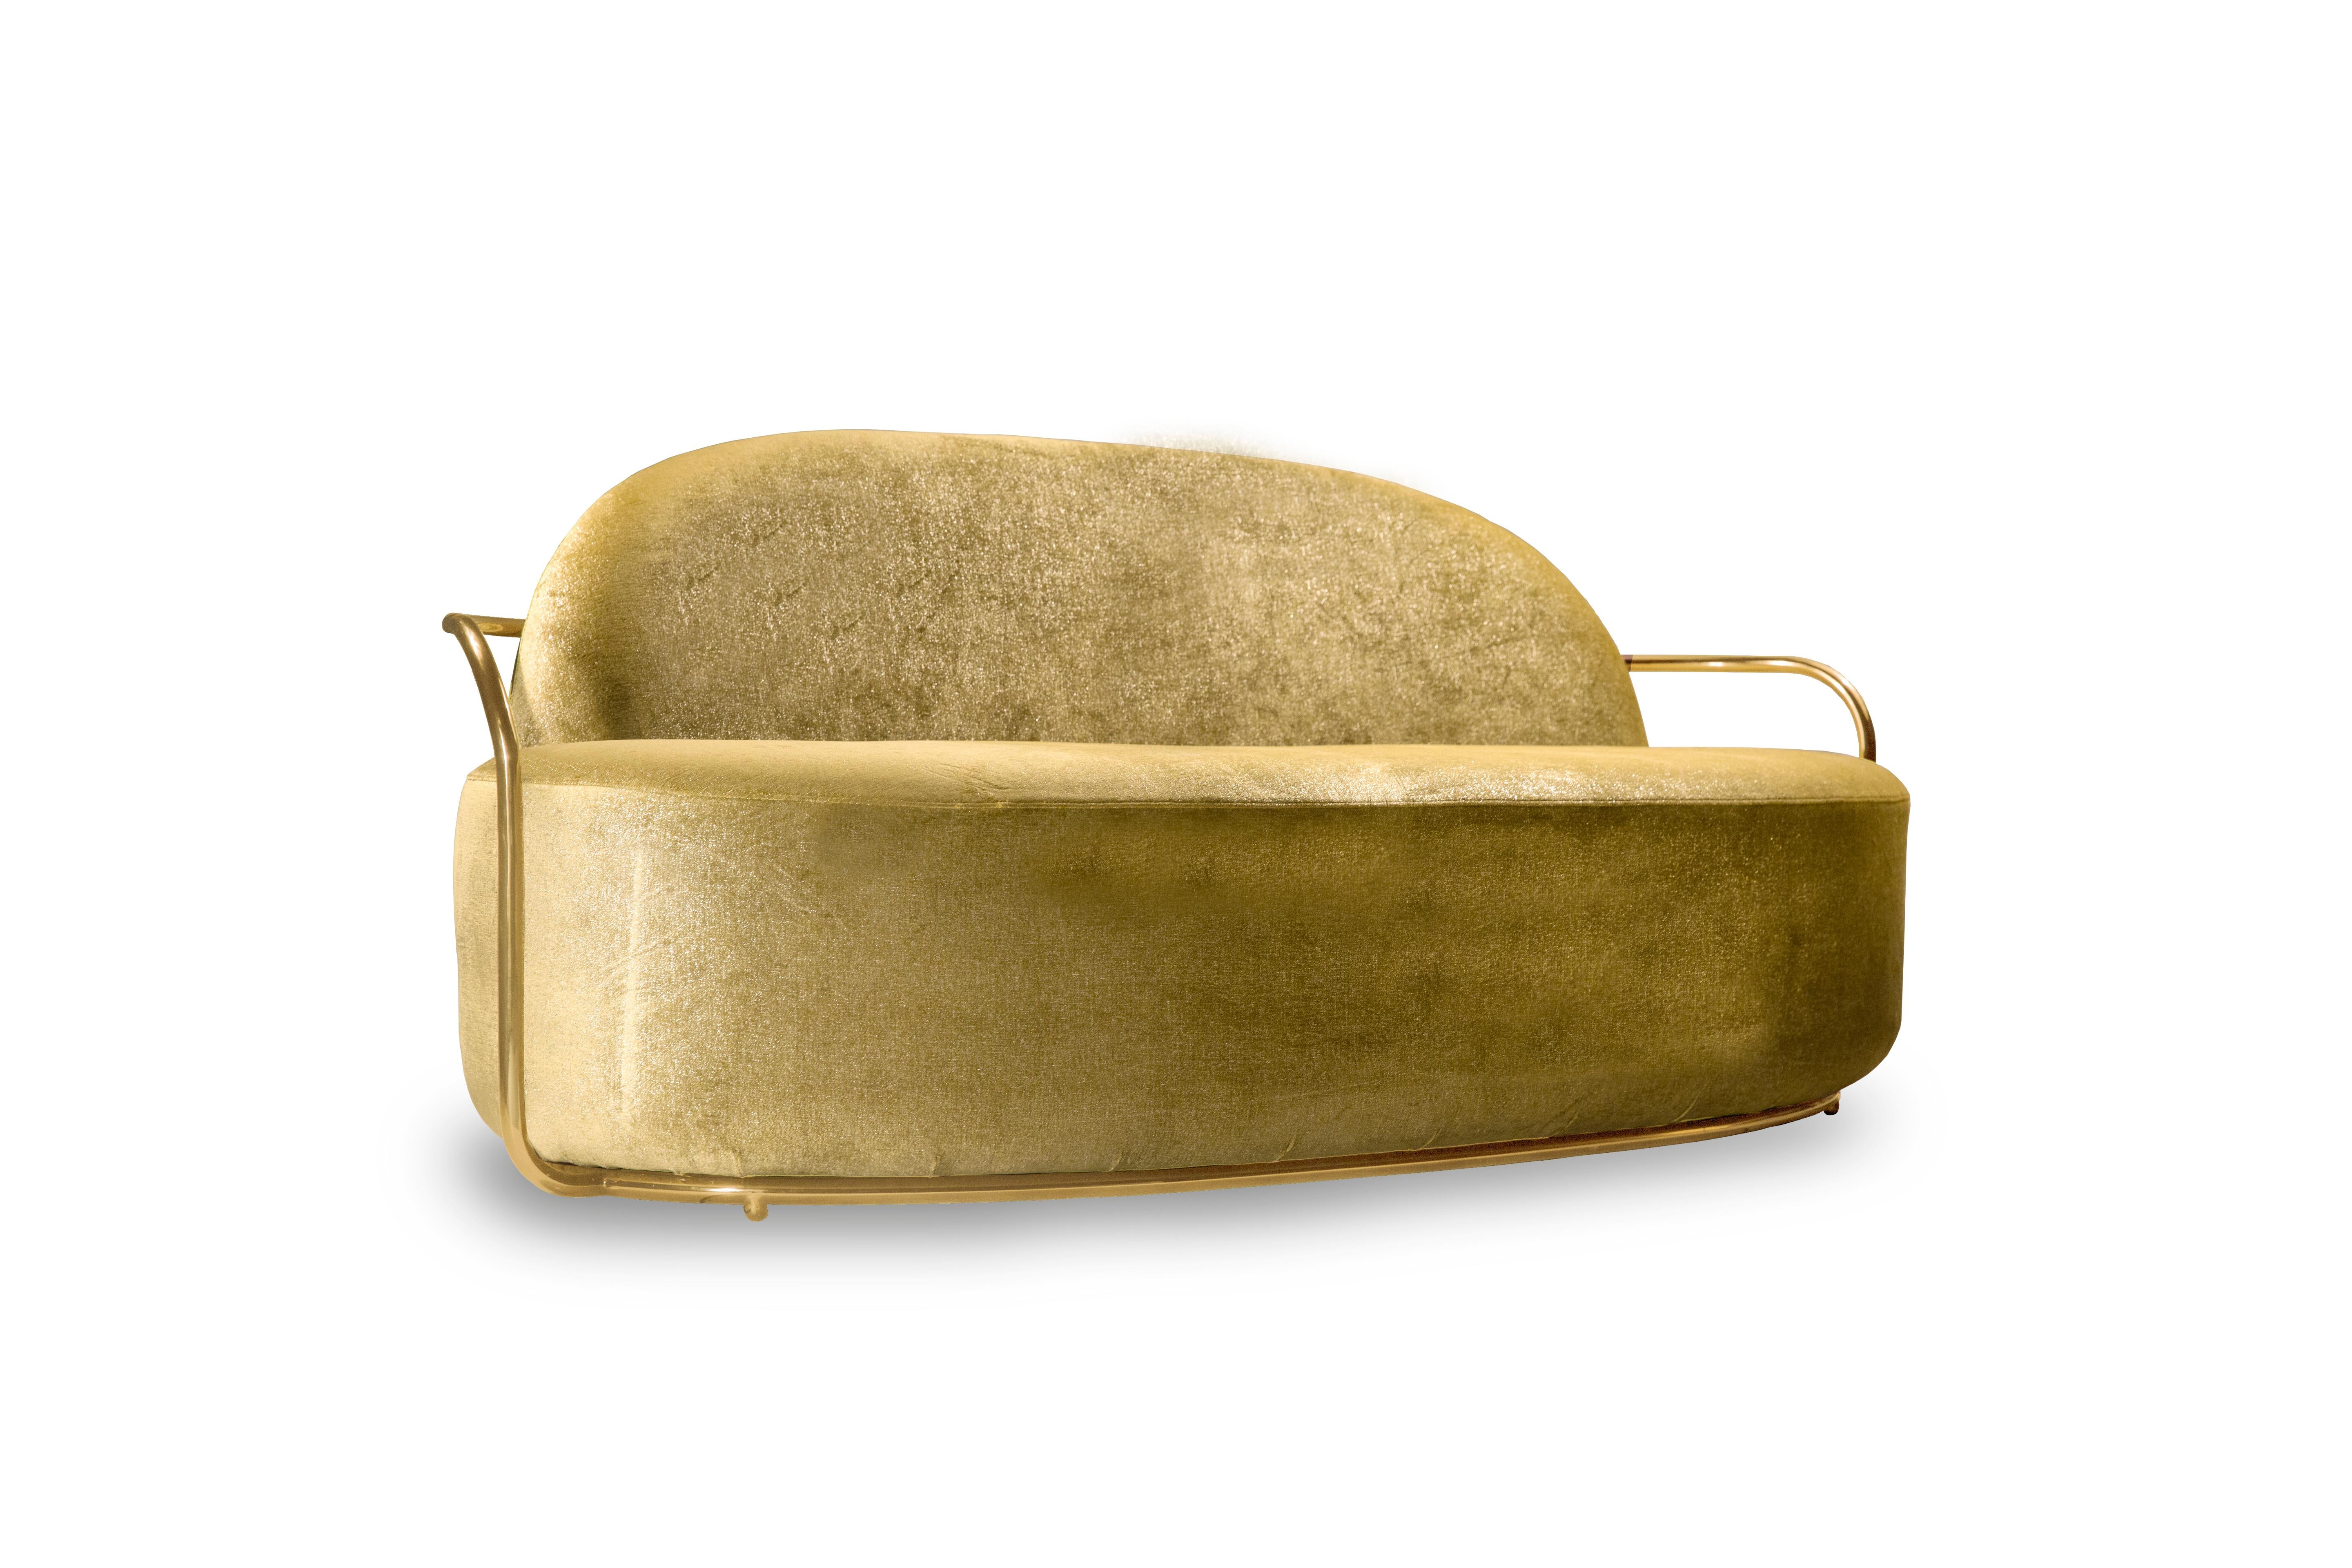 Orion 3 Seat Sofa with Dedar Velvet and Gold Arms by NIKA ZUPANC est un canapé une place avec un opulent tissu doré de Dedar Milano et des accoudoirs en métal doré. Une pièce de choix !

Nika ZUPANC, designer slovène de renom, n'hésite jamais à